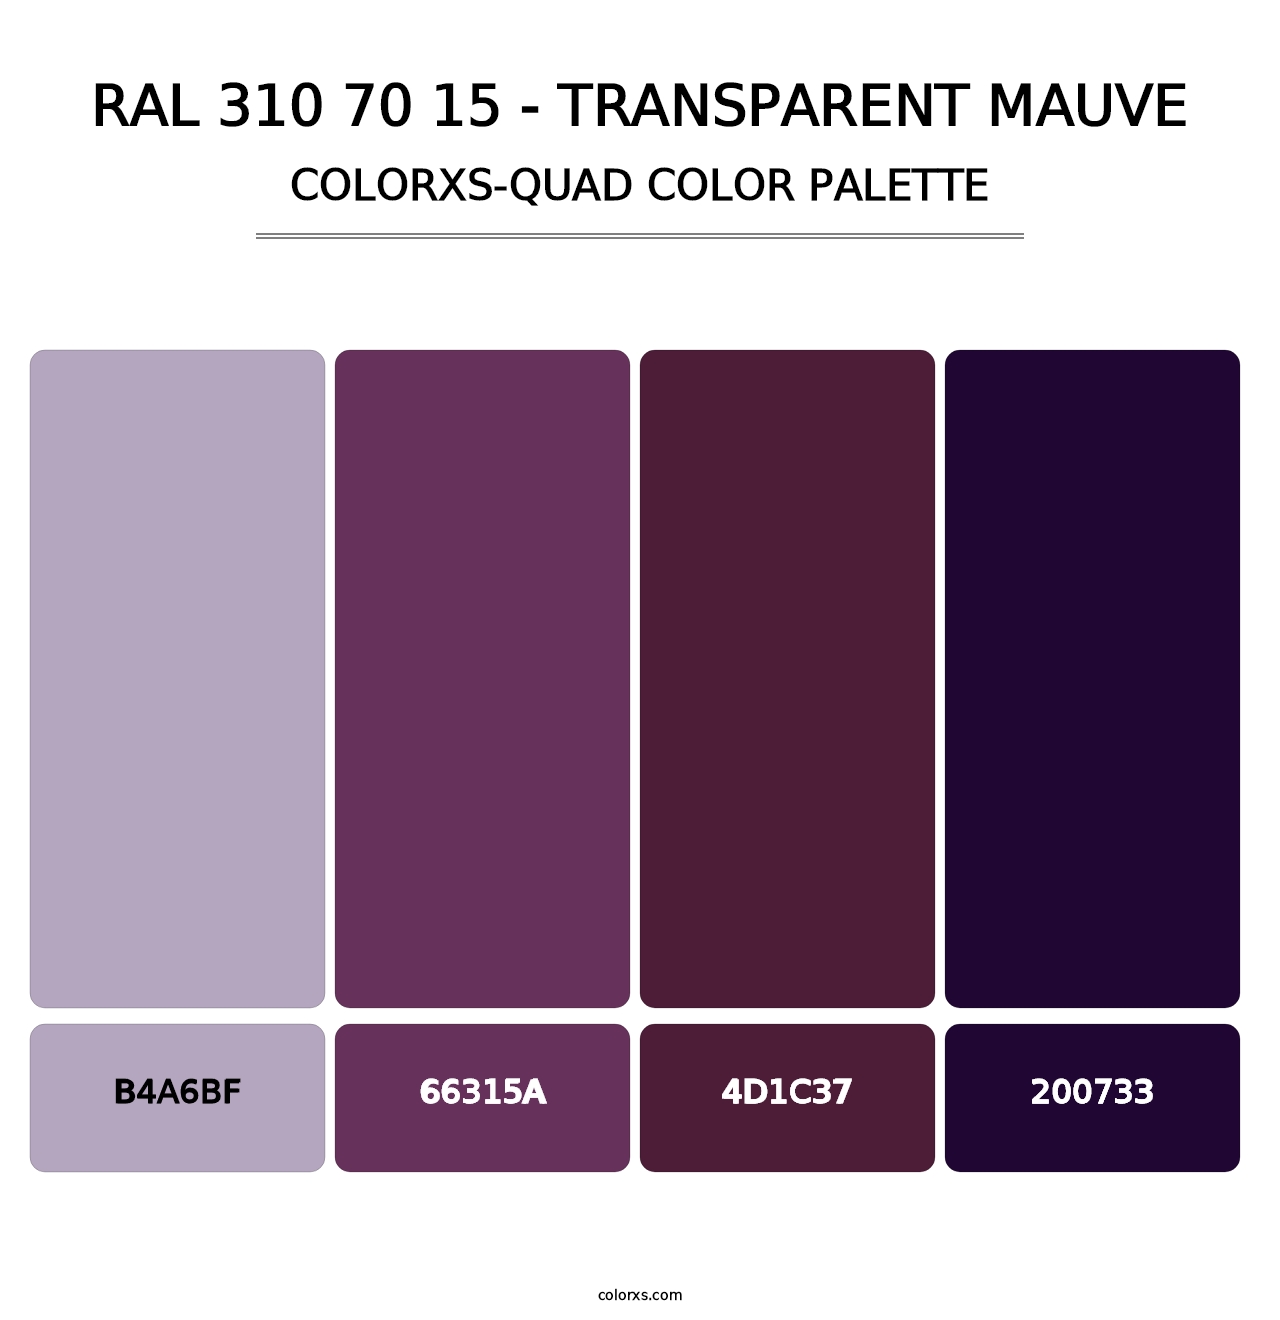 RAL 310 70 15 - Transparent Mauve - Colorxs Quad Palette